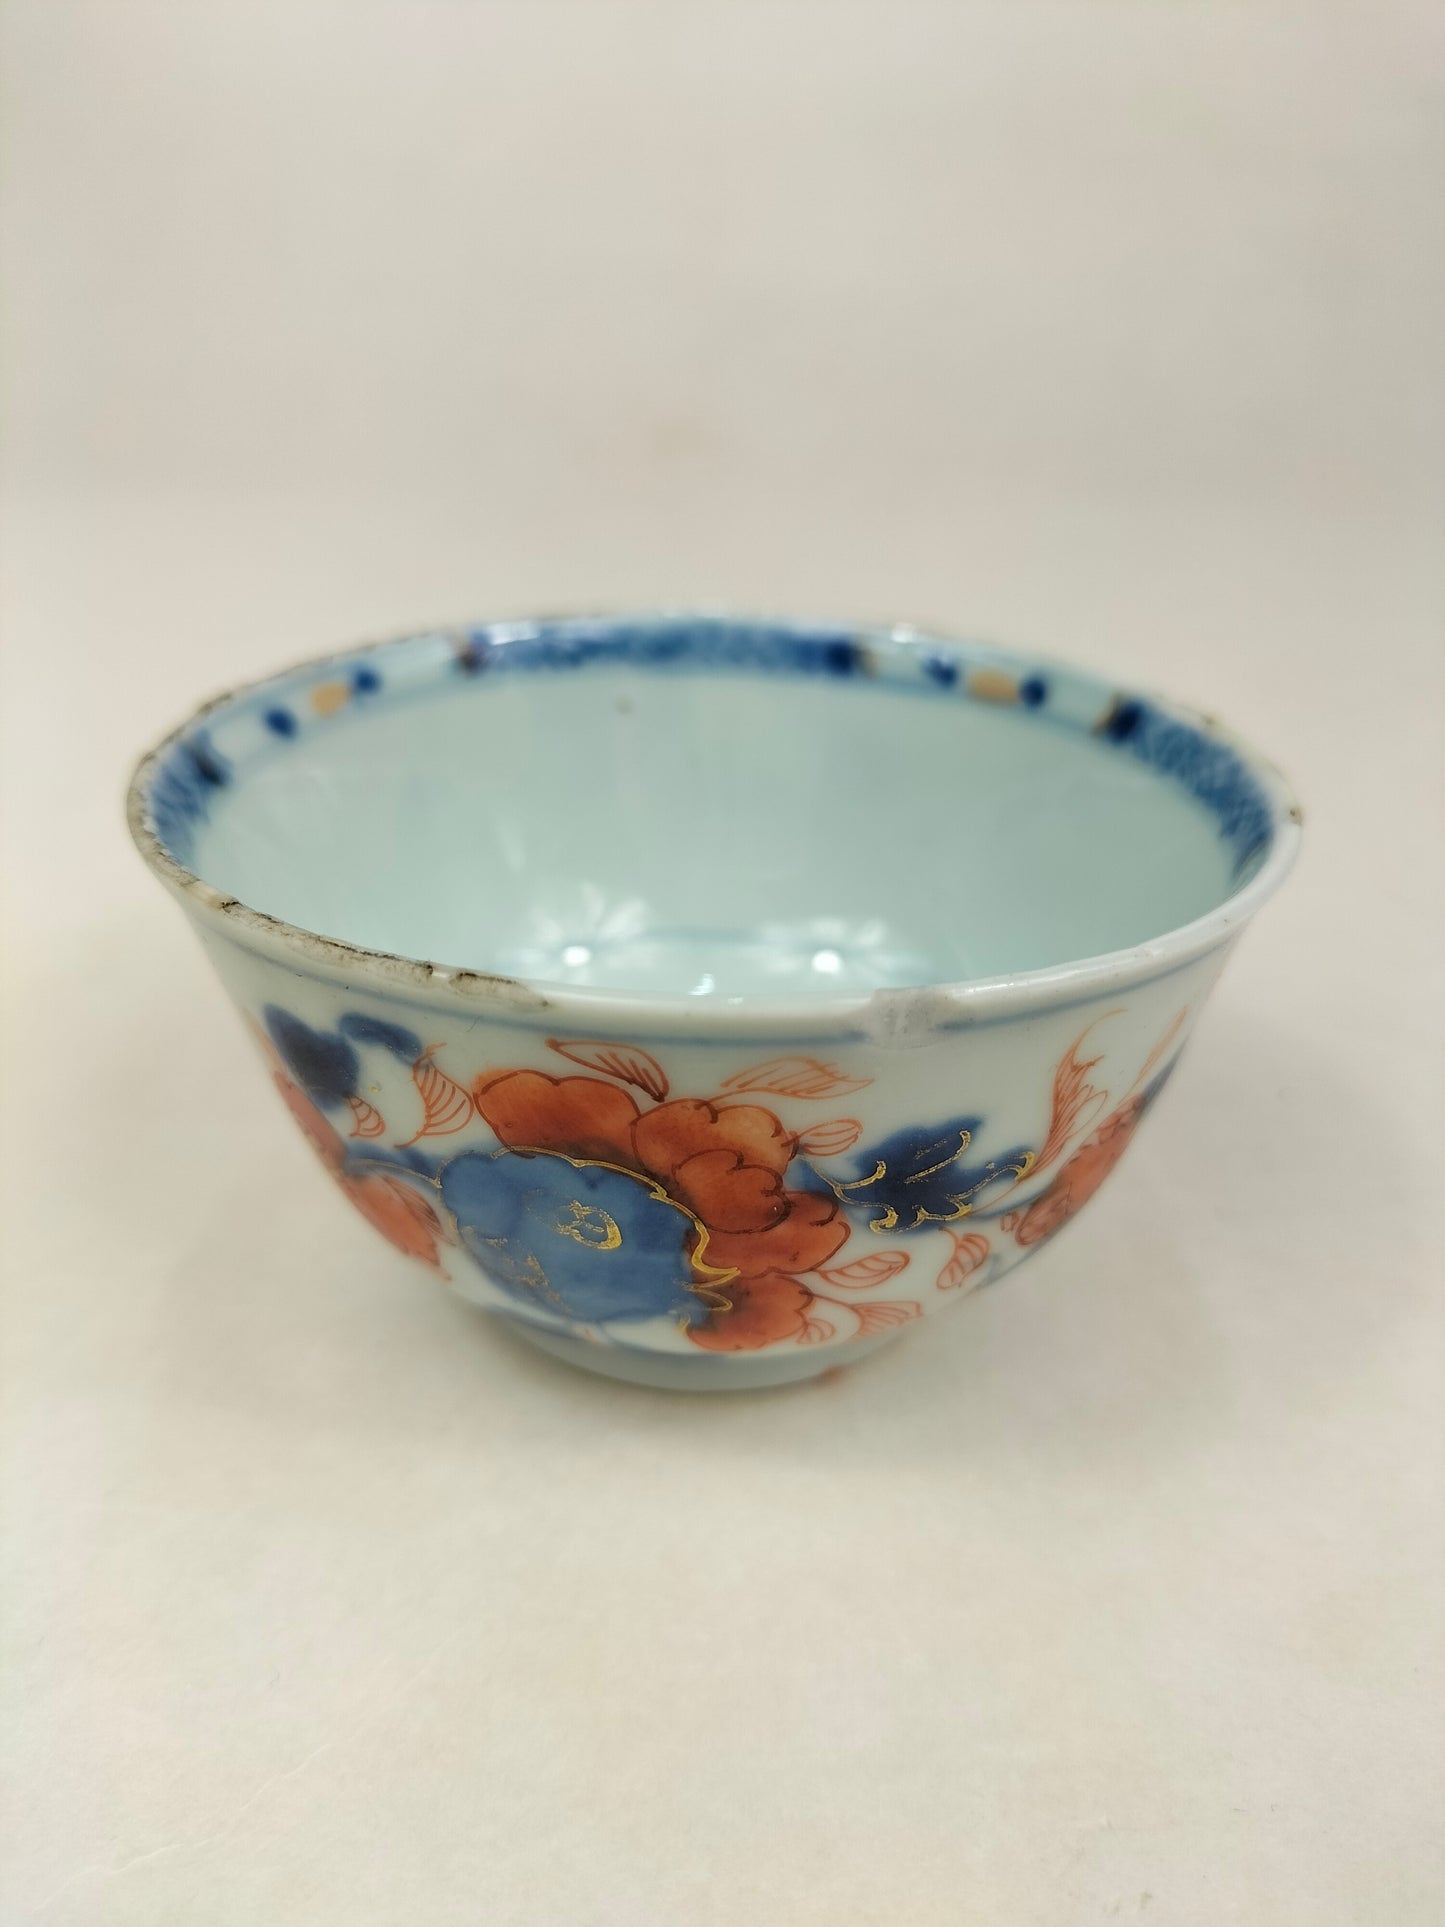 一套 6 个古董伊万里茶杯和茶碟 // 清朝 - 康熙 - 18 世纪